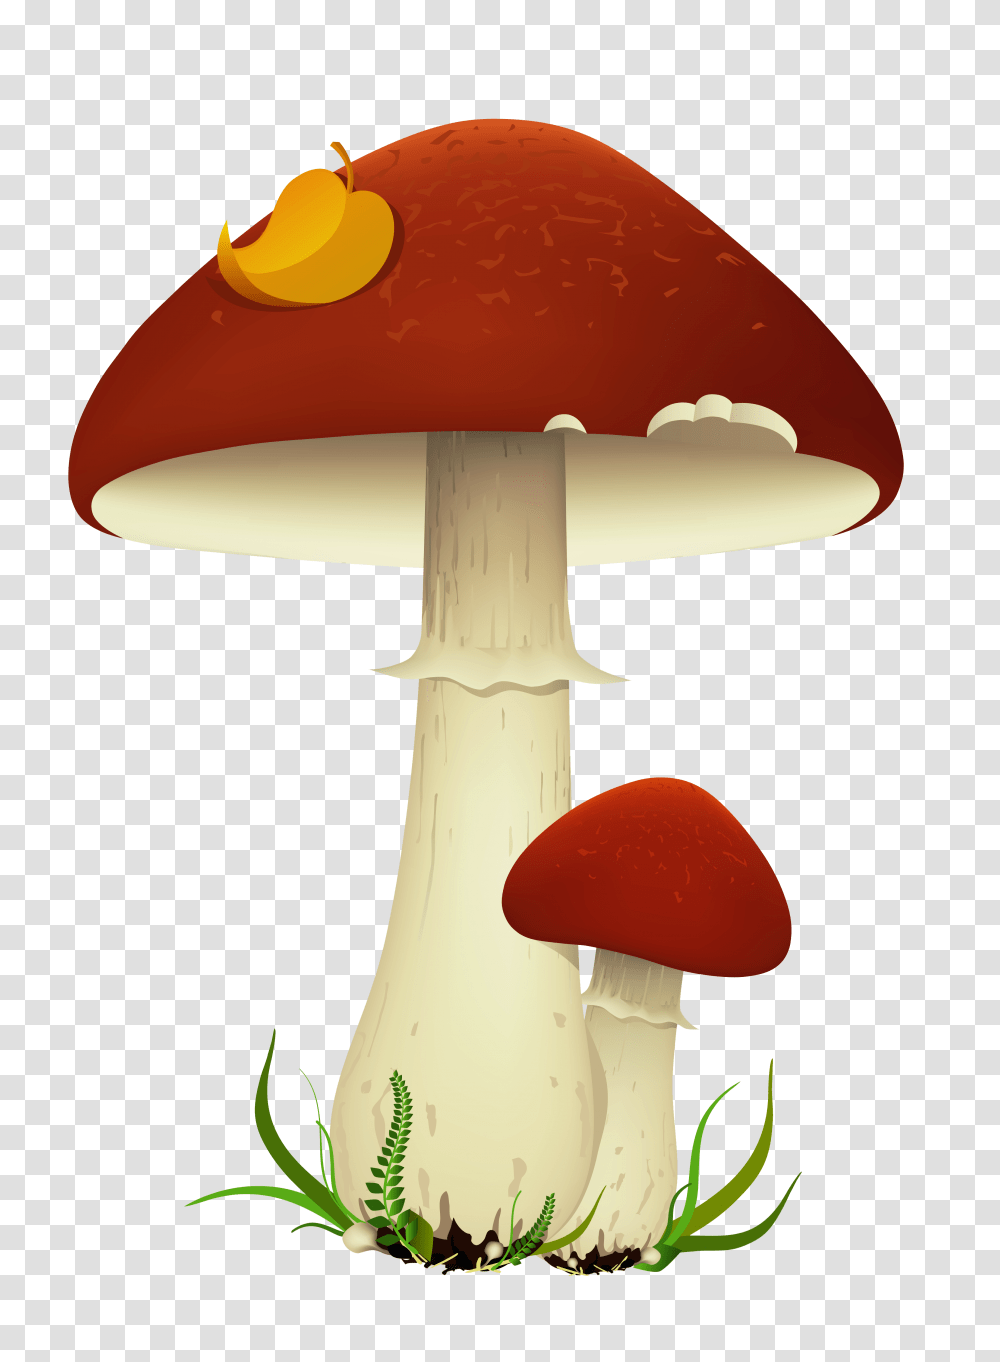 Fall Mushrooms, Plant, Amanita, Agaric, Fungus Transparent Png